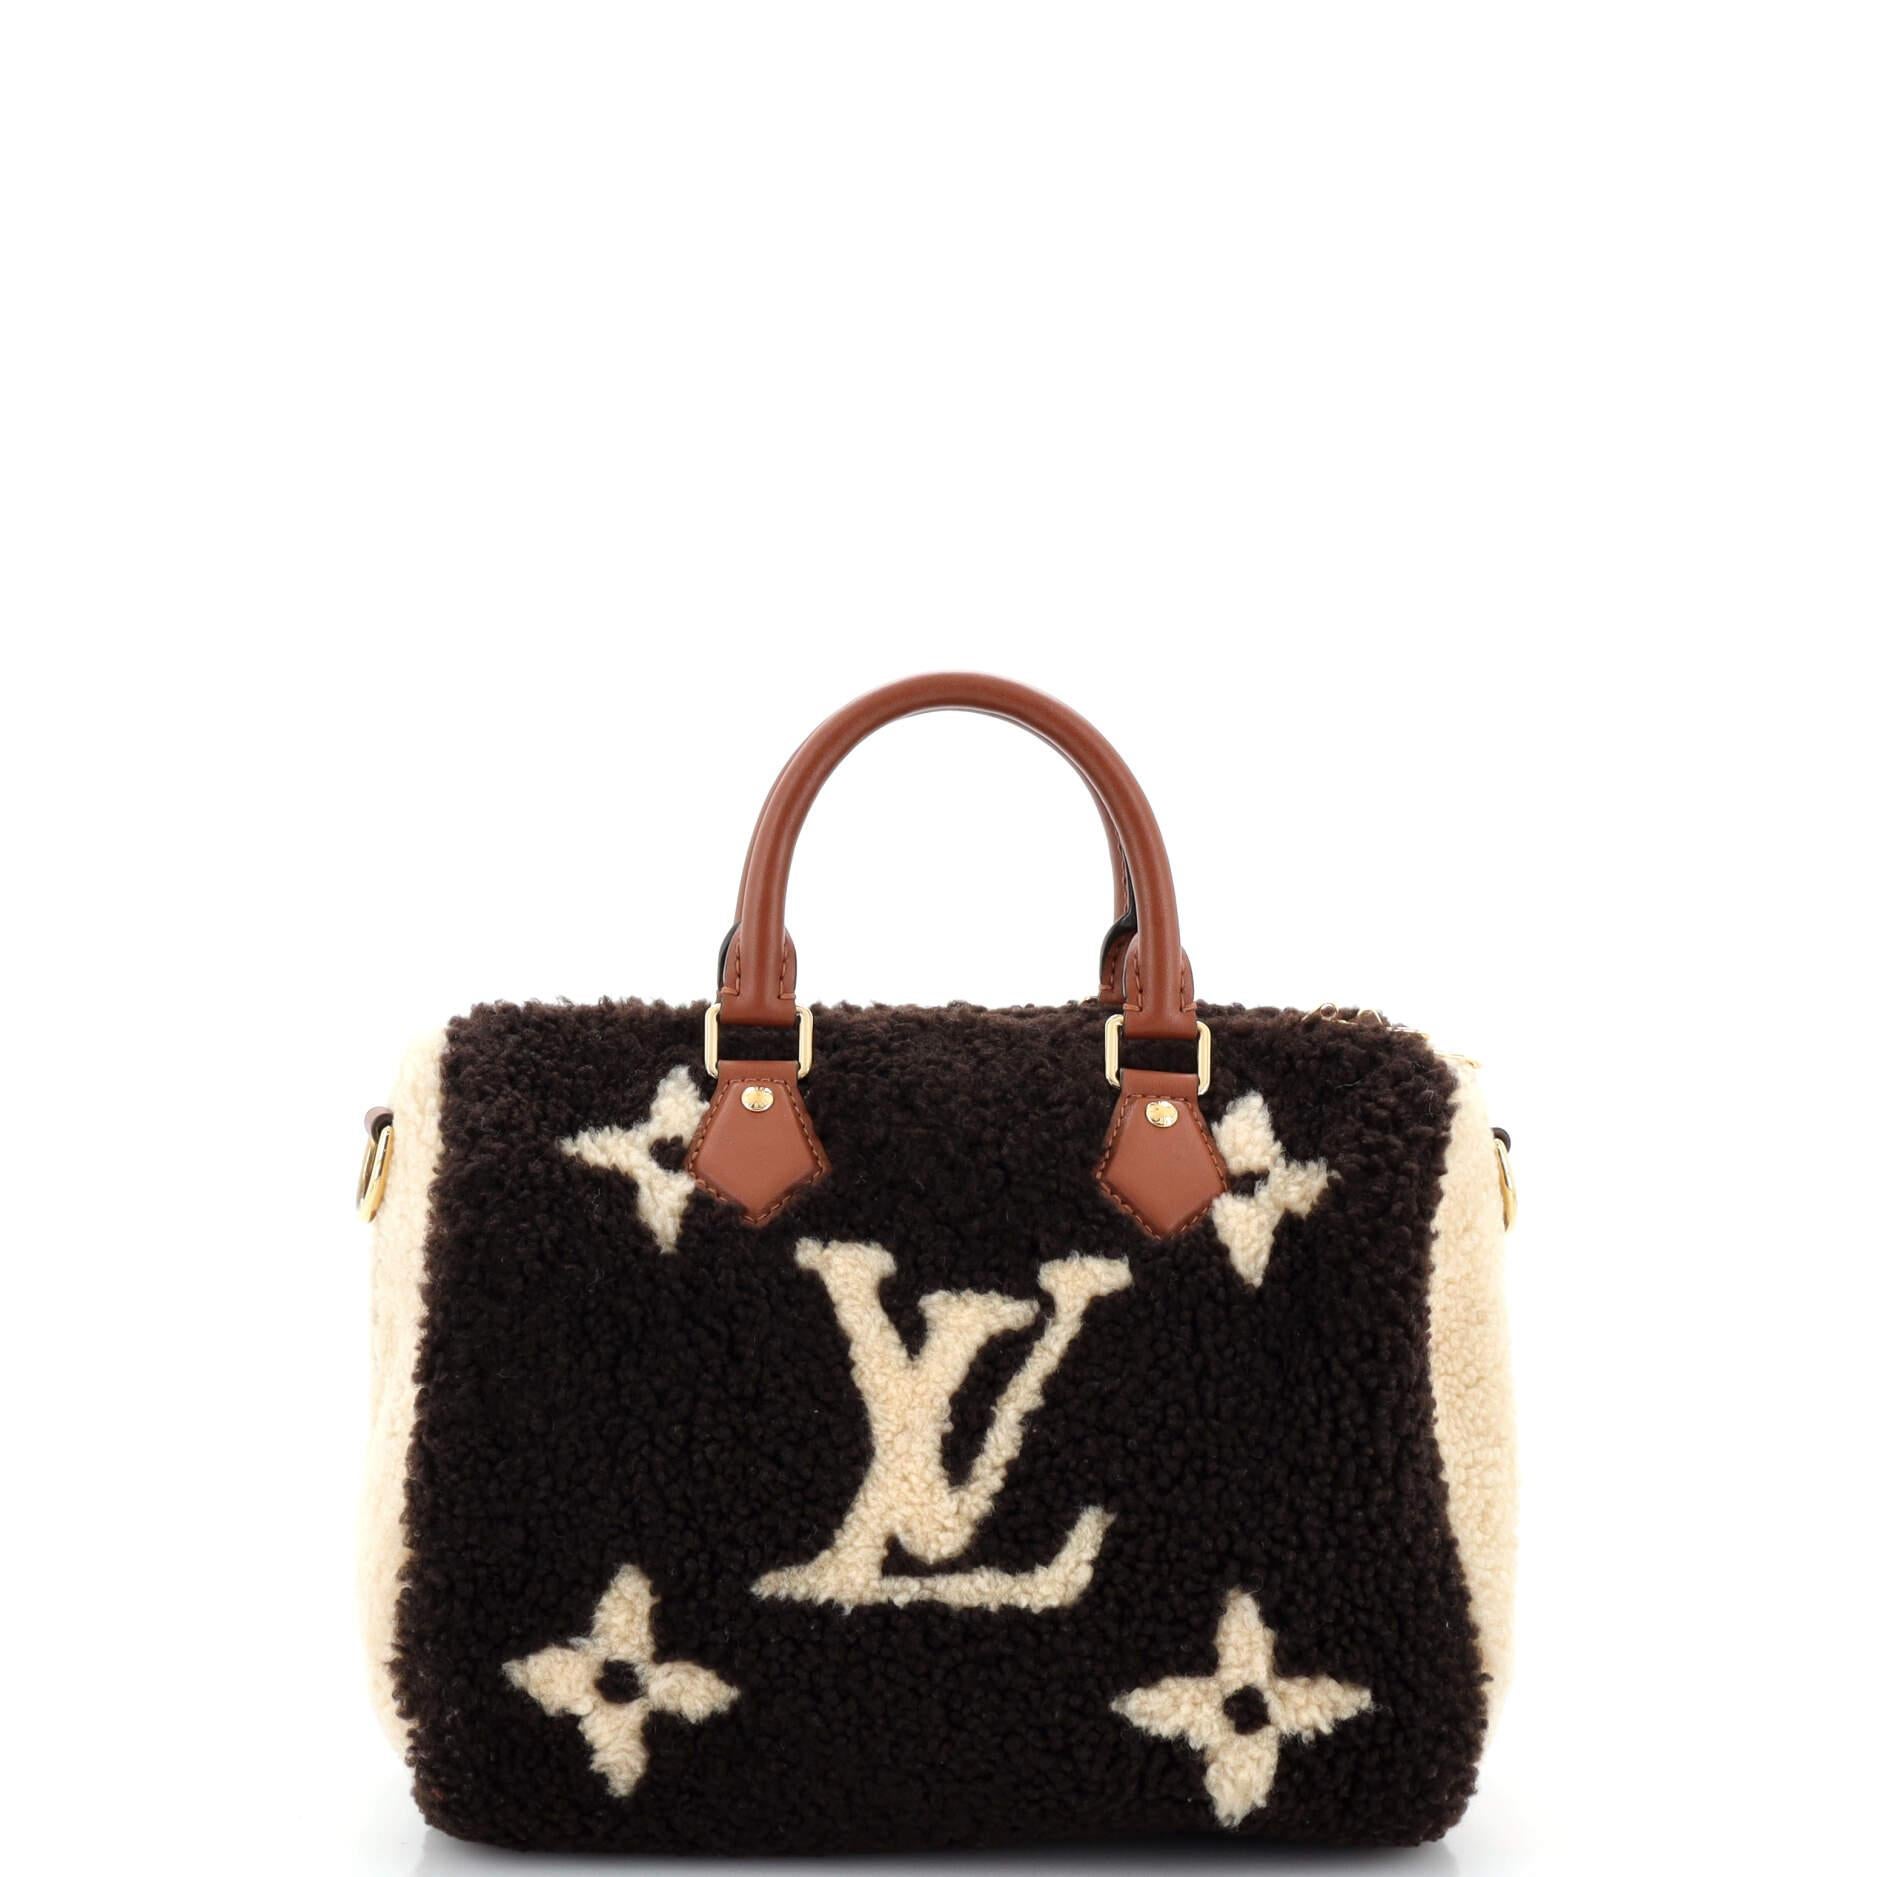 Louis Vuitton Speedy Bandouliere Tasche mit Monogramm aus riesigem Teddy-Fleece 25 für Damen oder Herren